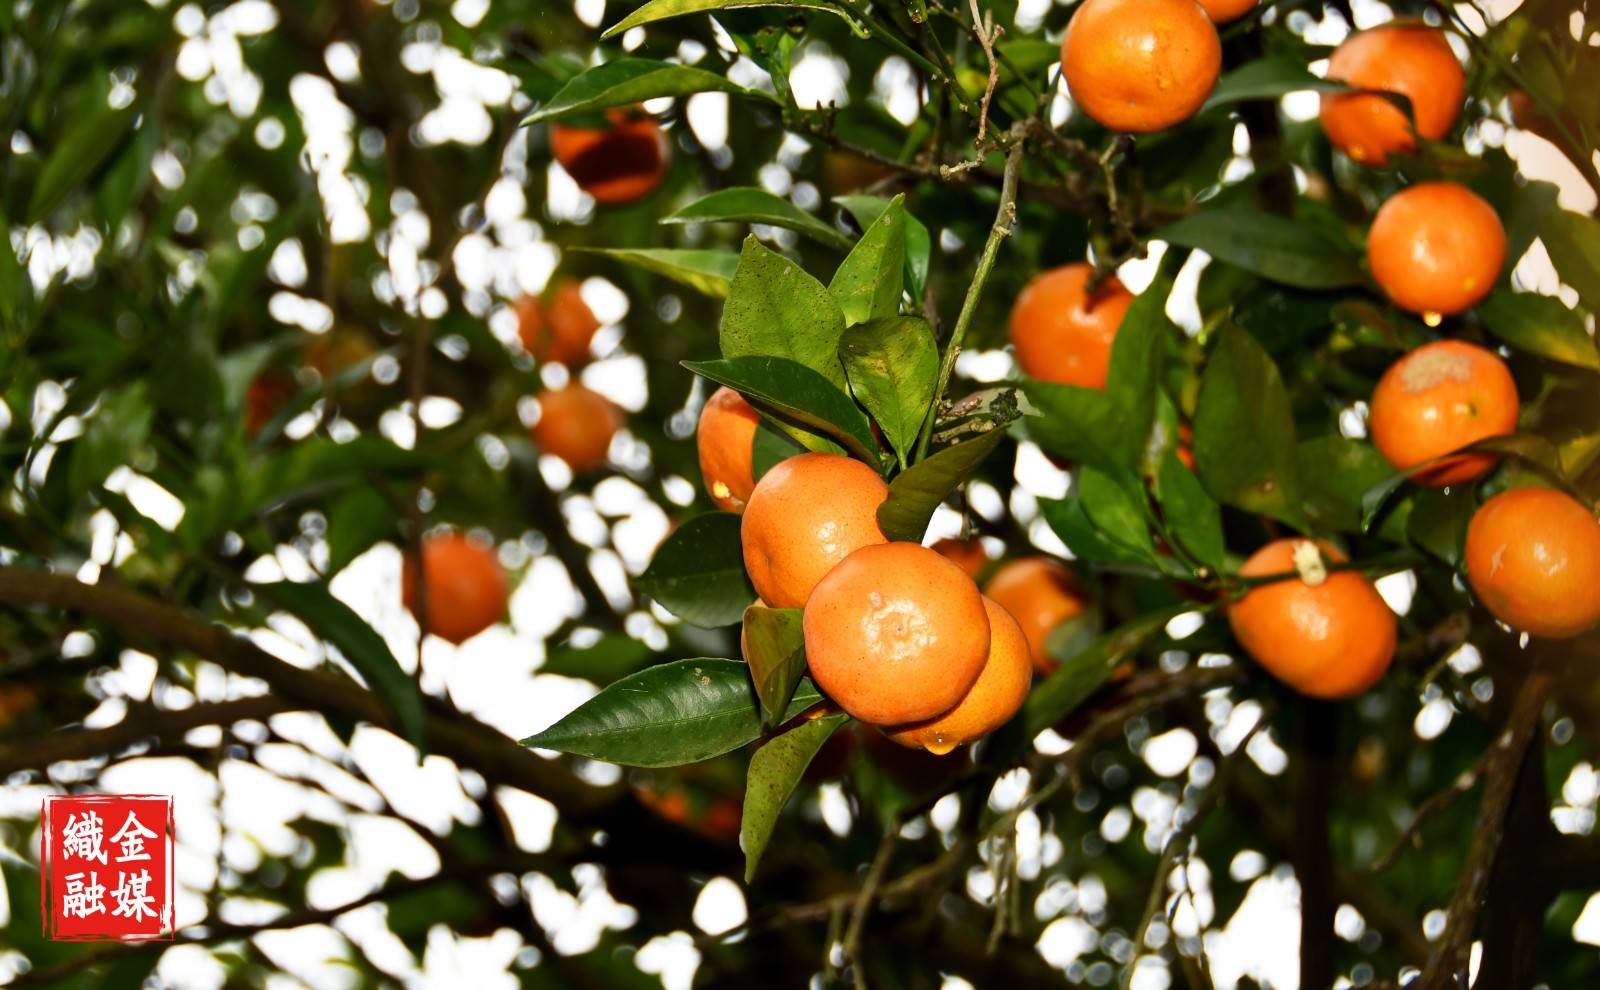 织金红岩社区的橘子熟了!周末约吗